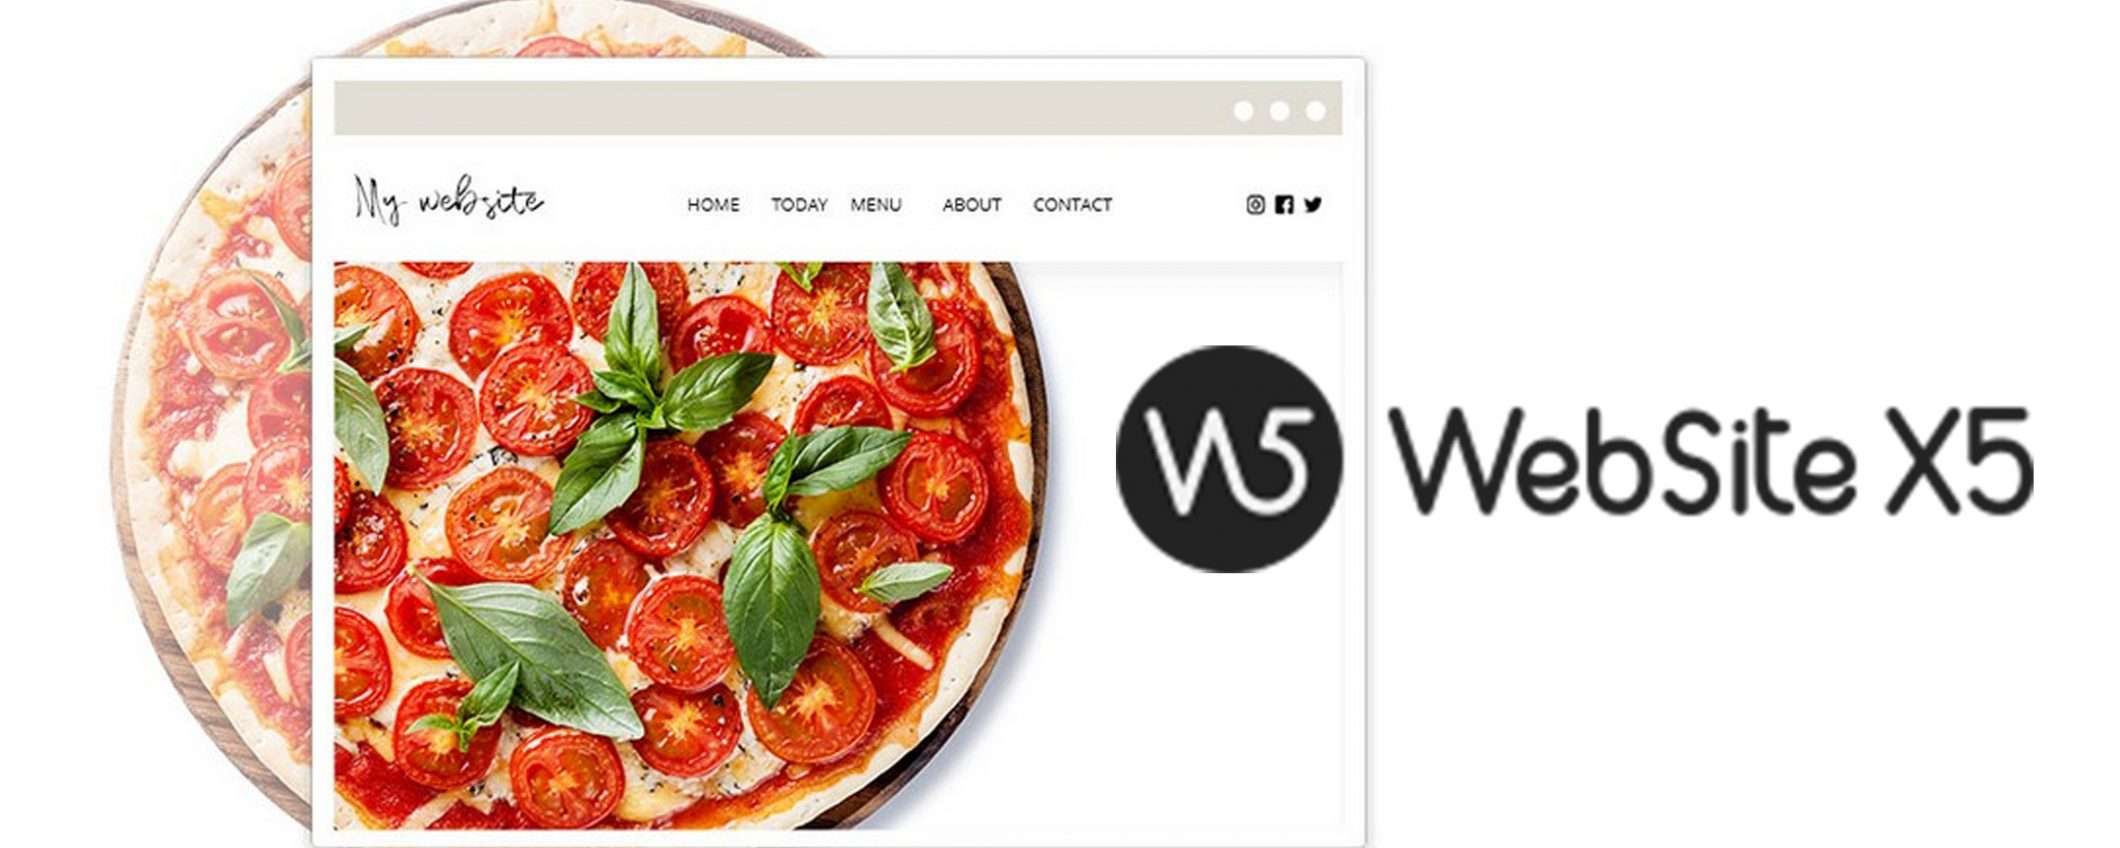 WebSite X5, risparmia il 35% grazie all'esclusivo coupon